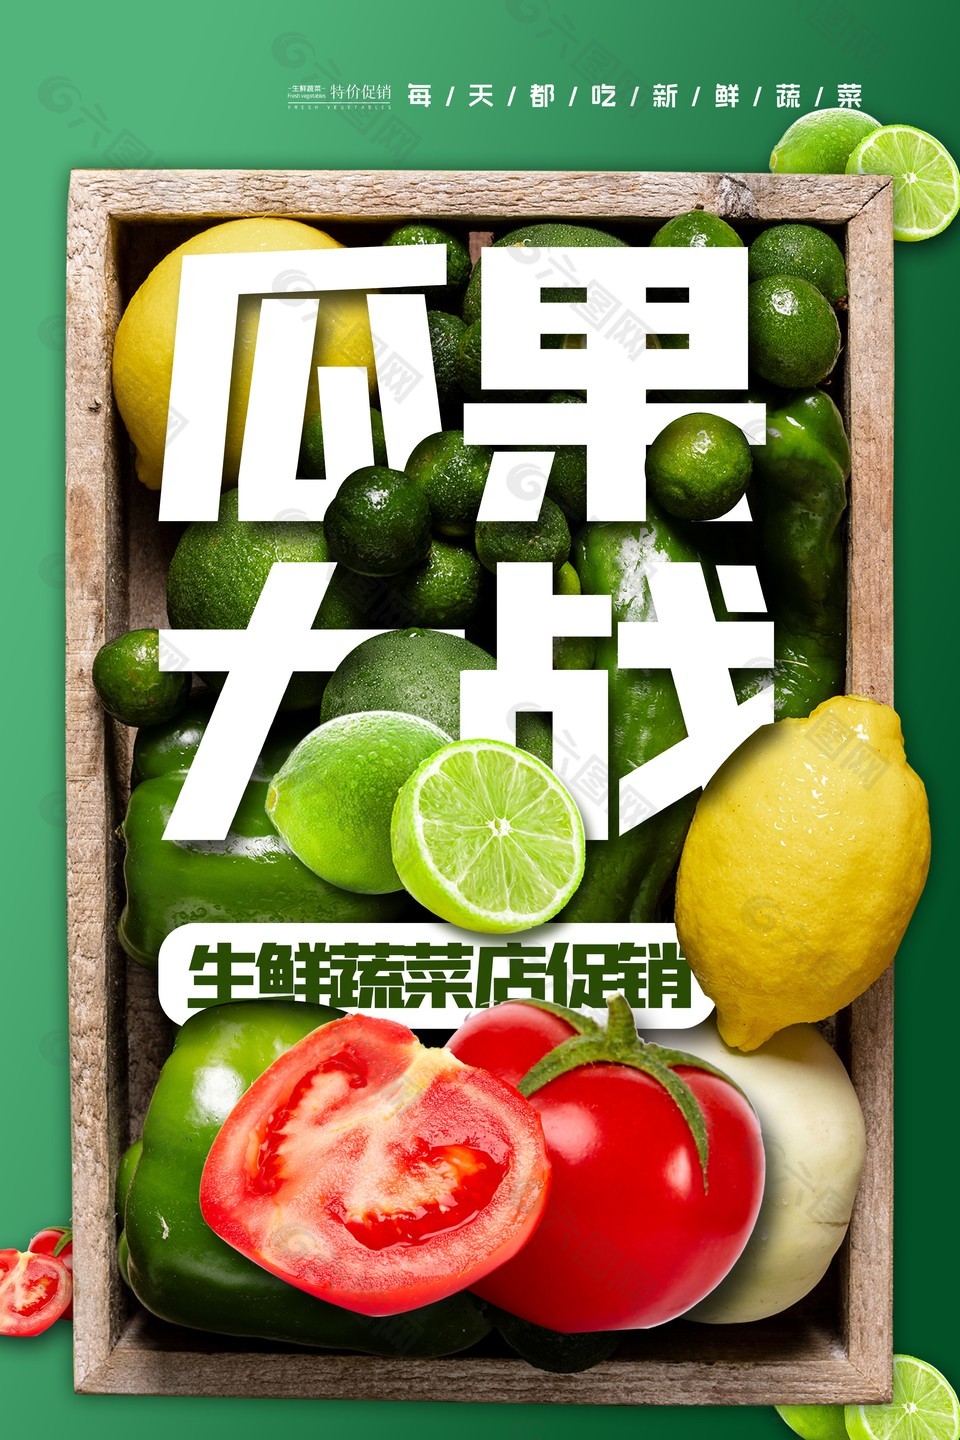 生鲜蔬菜店促销绿色主题海报设计大全